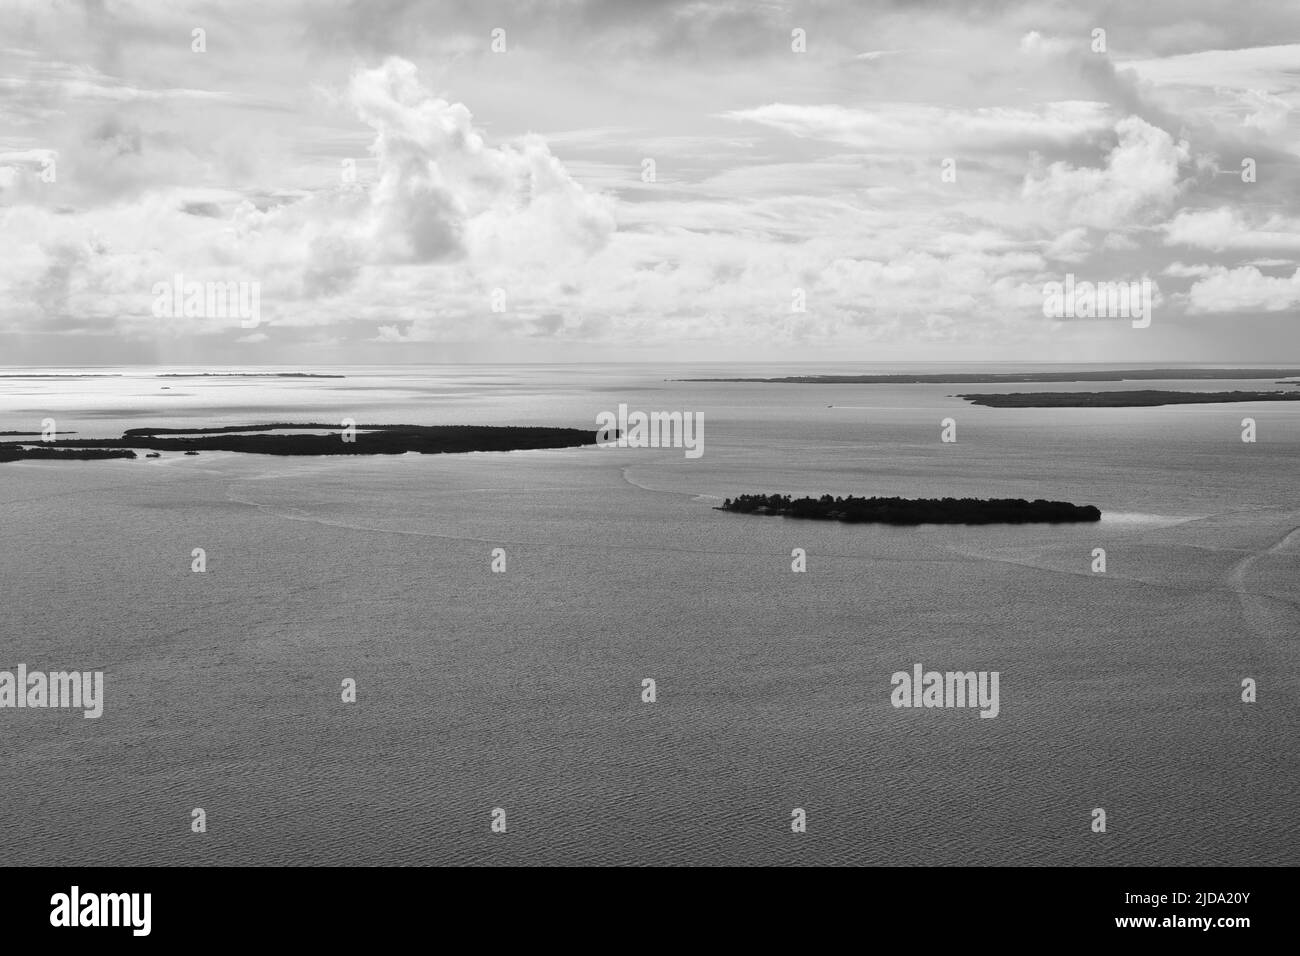 Eine schwarz-weiße Luftlandschaft, die an einem bewölkten Tag aufgenommen wurde. Atolle sind vom Karibischen Meer umgeben und Wolken sind im Hintergrund. Belize. Stockfoto